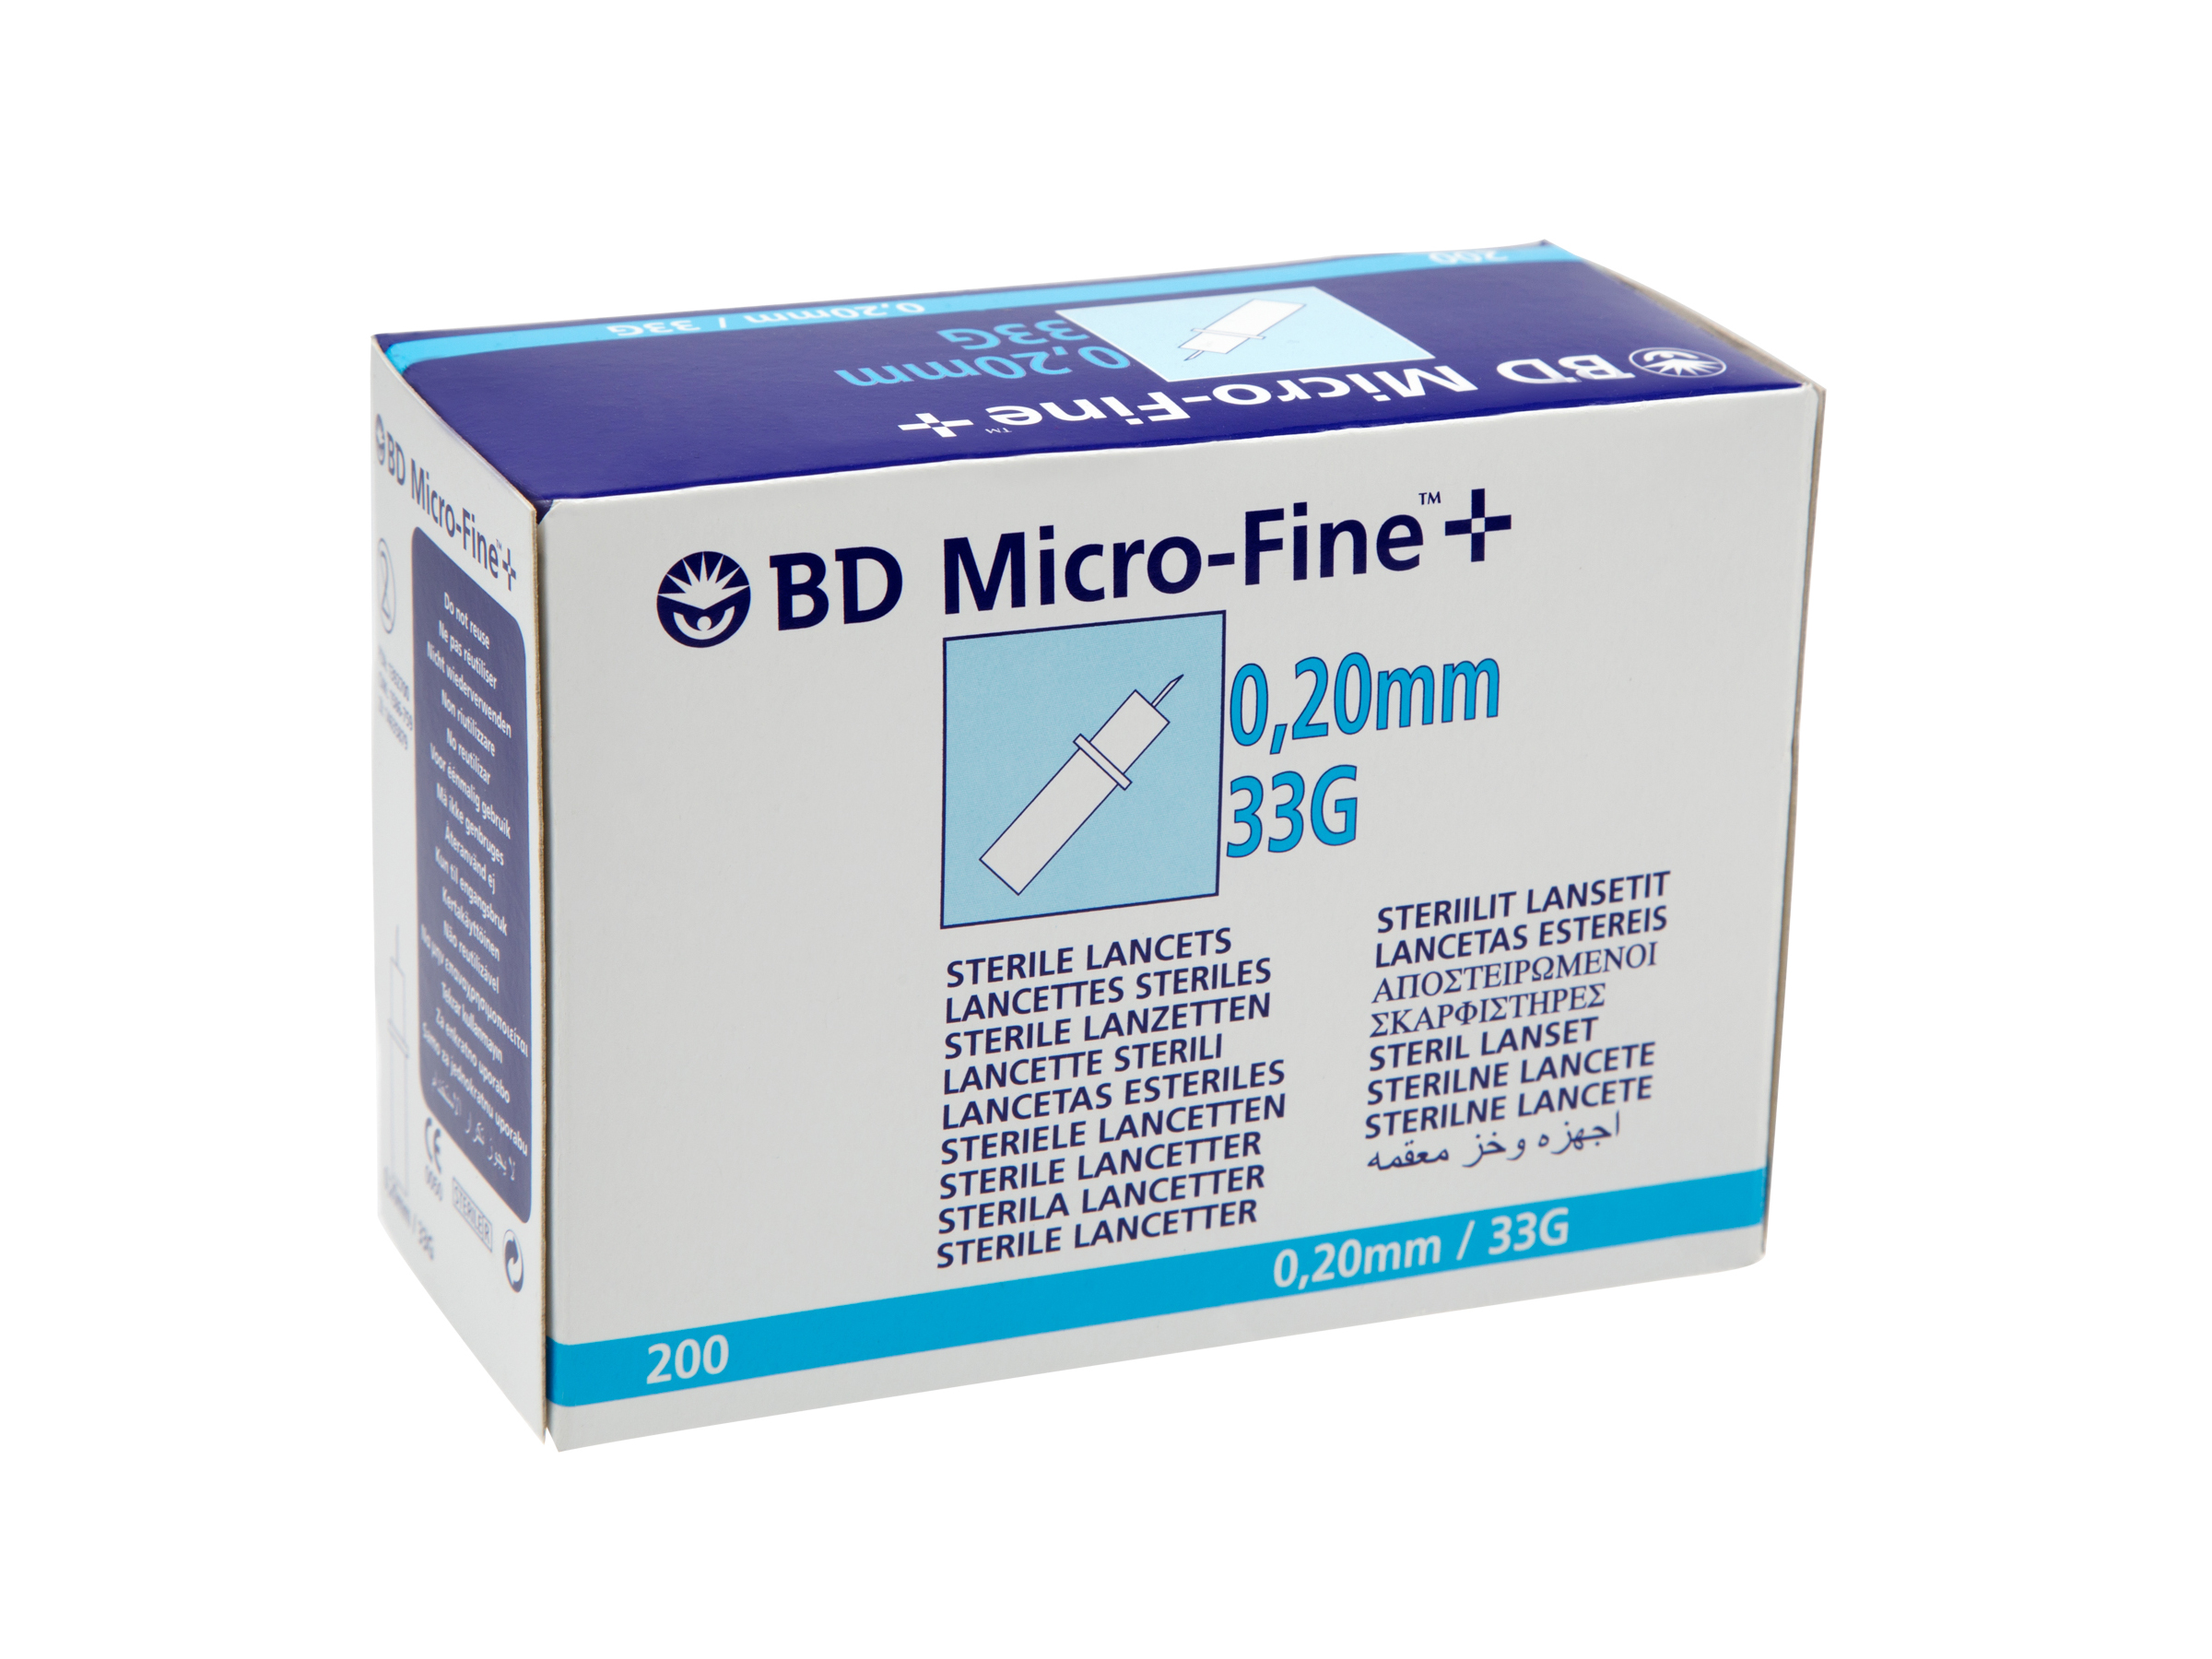 BD Micro-Fine lansett til stikkepenn, 200 stk.